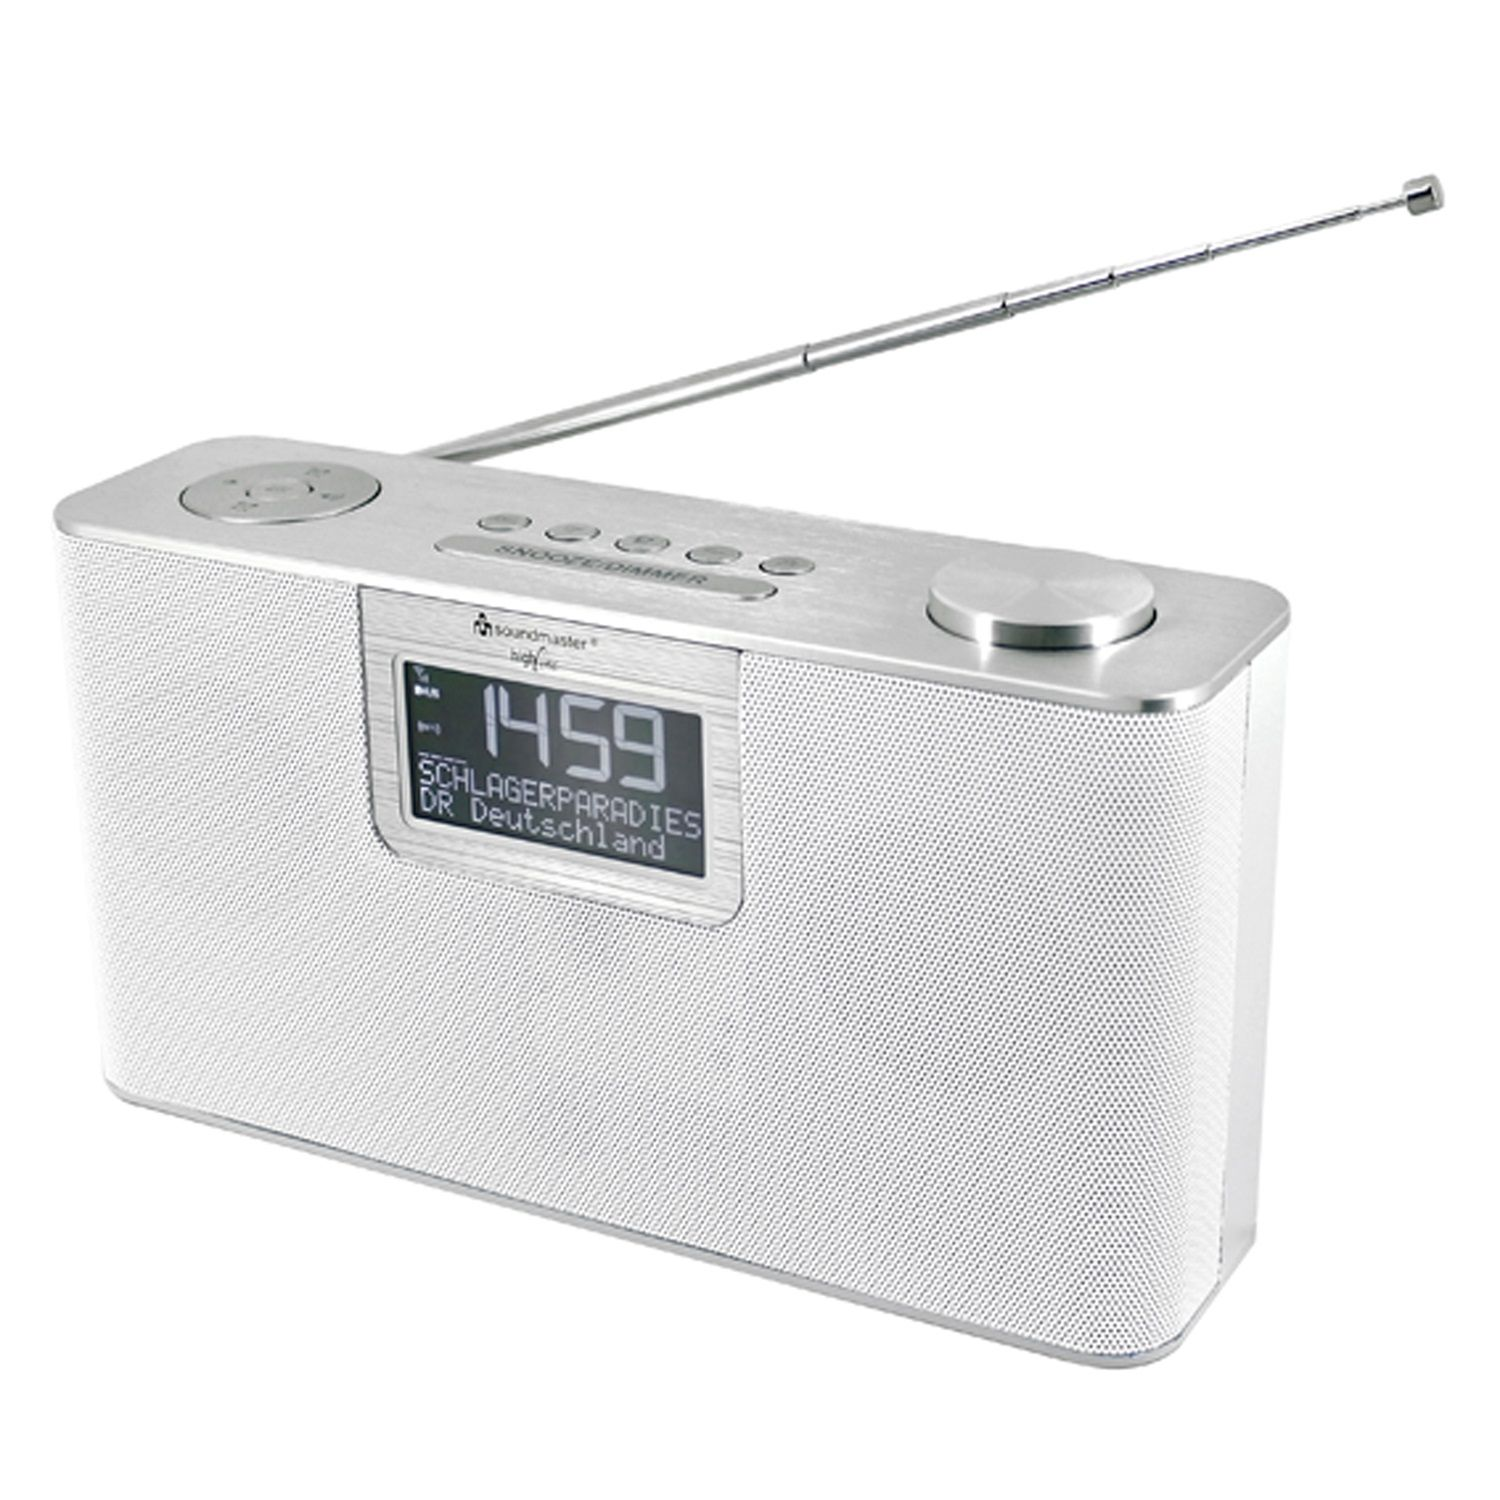 SOUNDMASTER DAB700WE Multifunktionsradio, weiß AM, Bluetooth, DAB+, DAB, DAB+, FM, FM